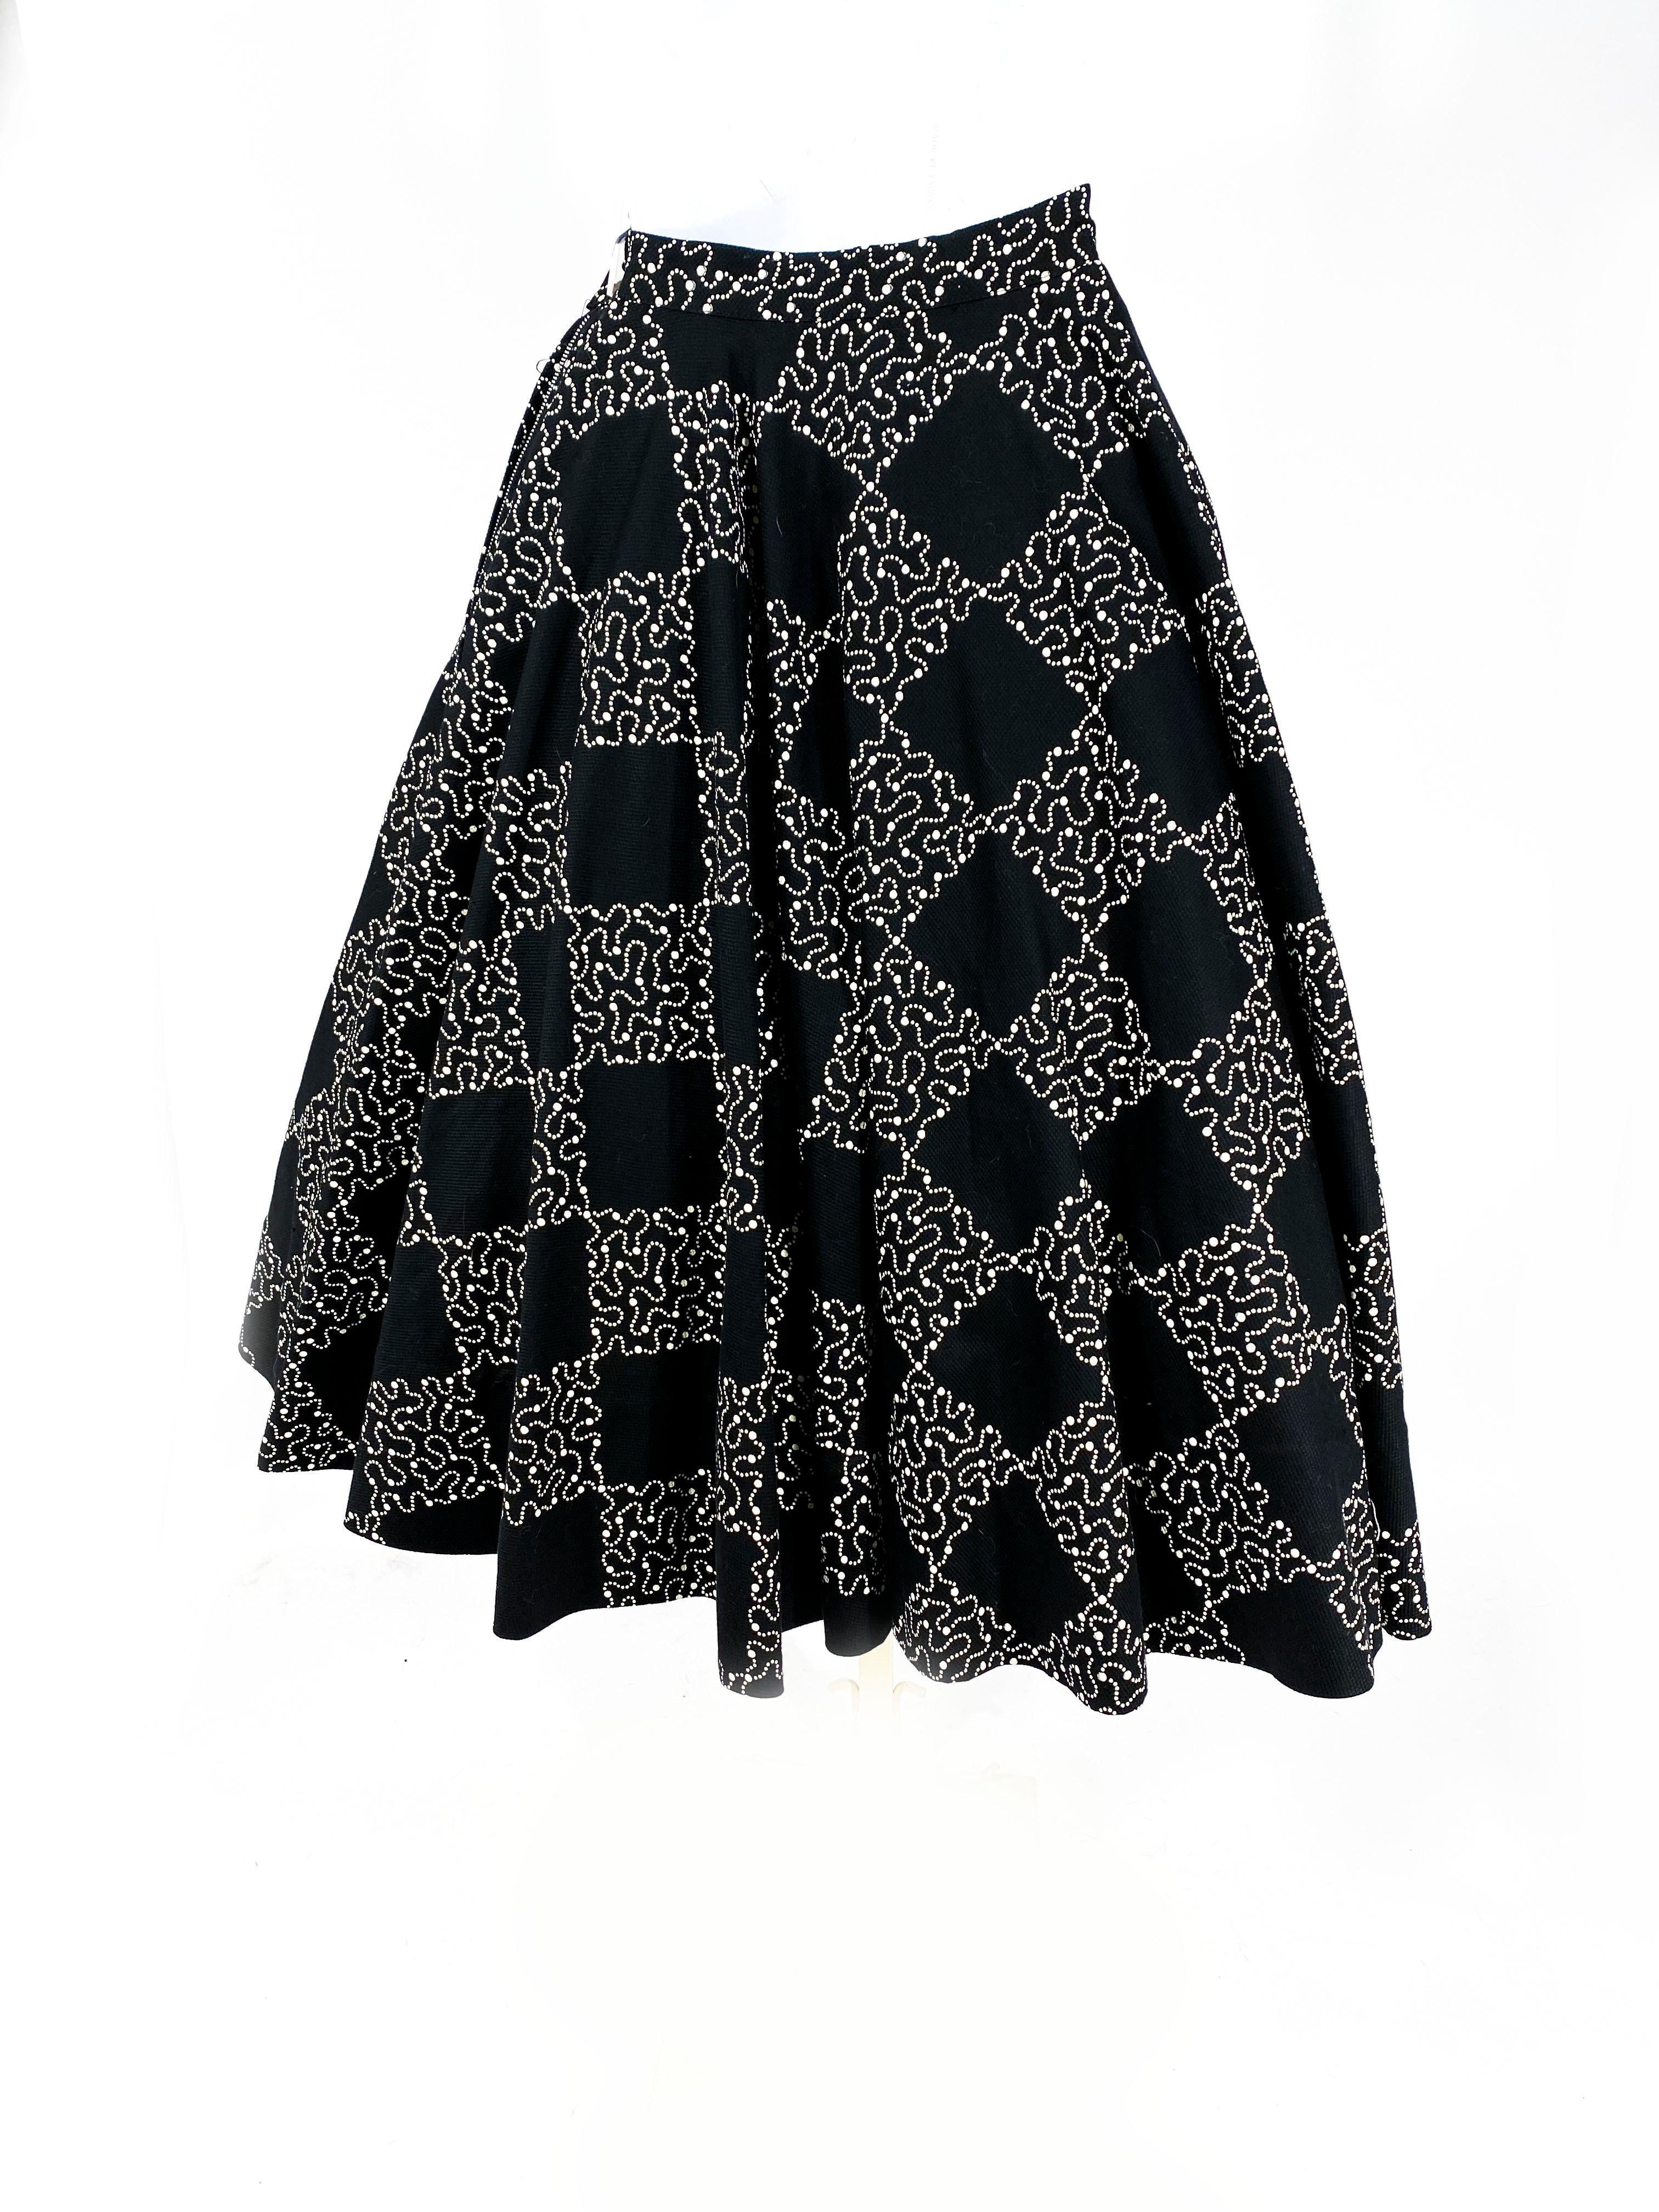 1950s black skirt